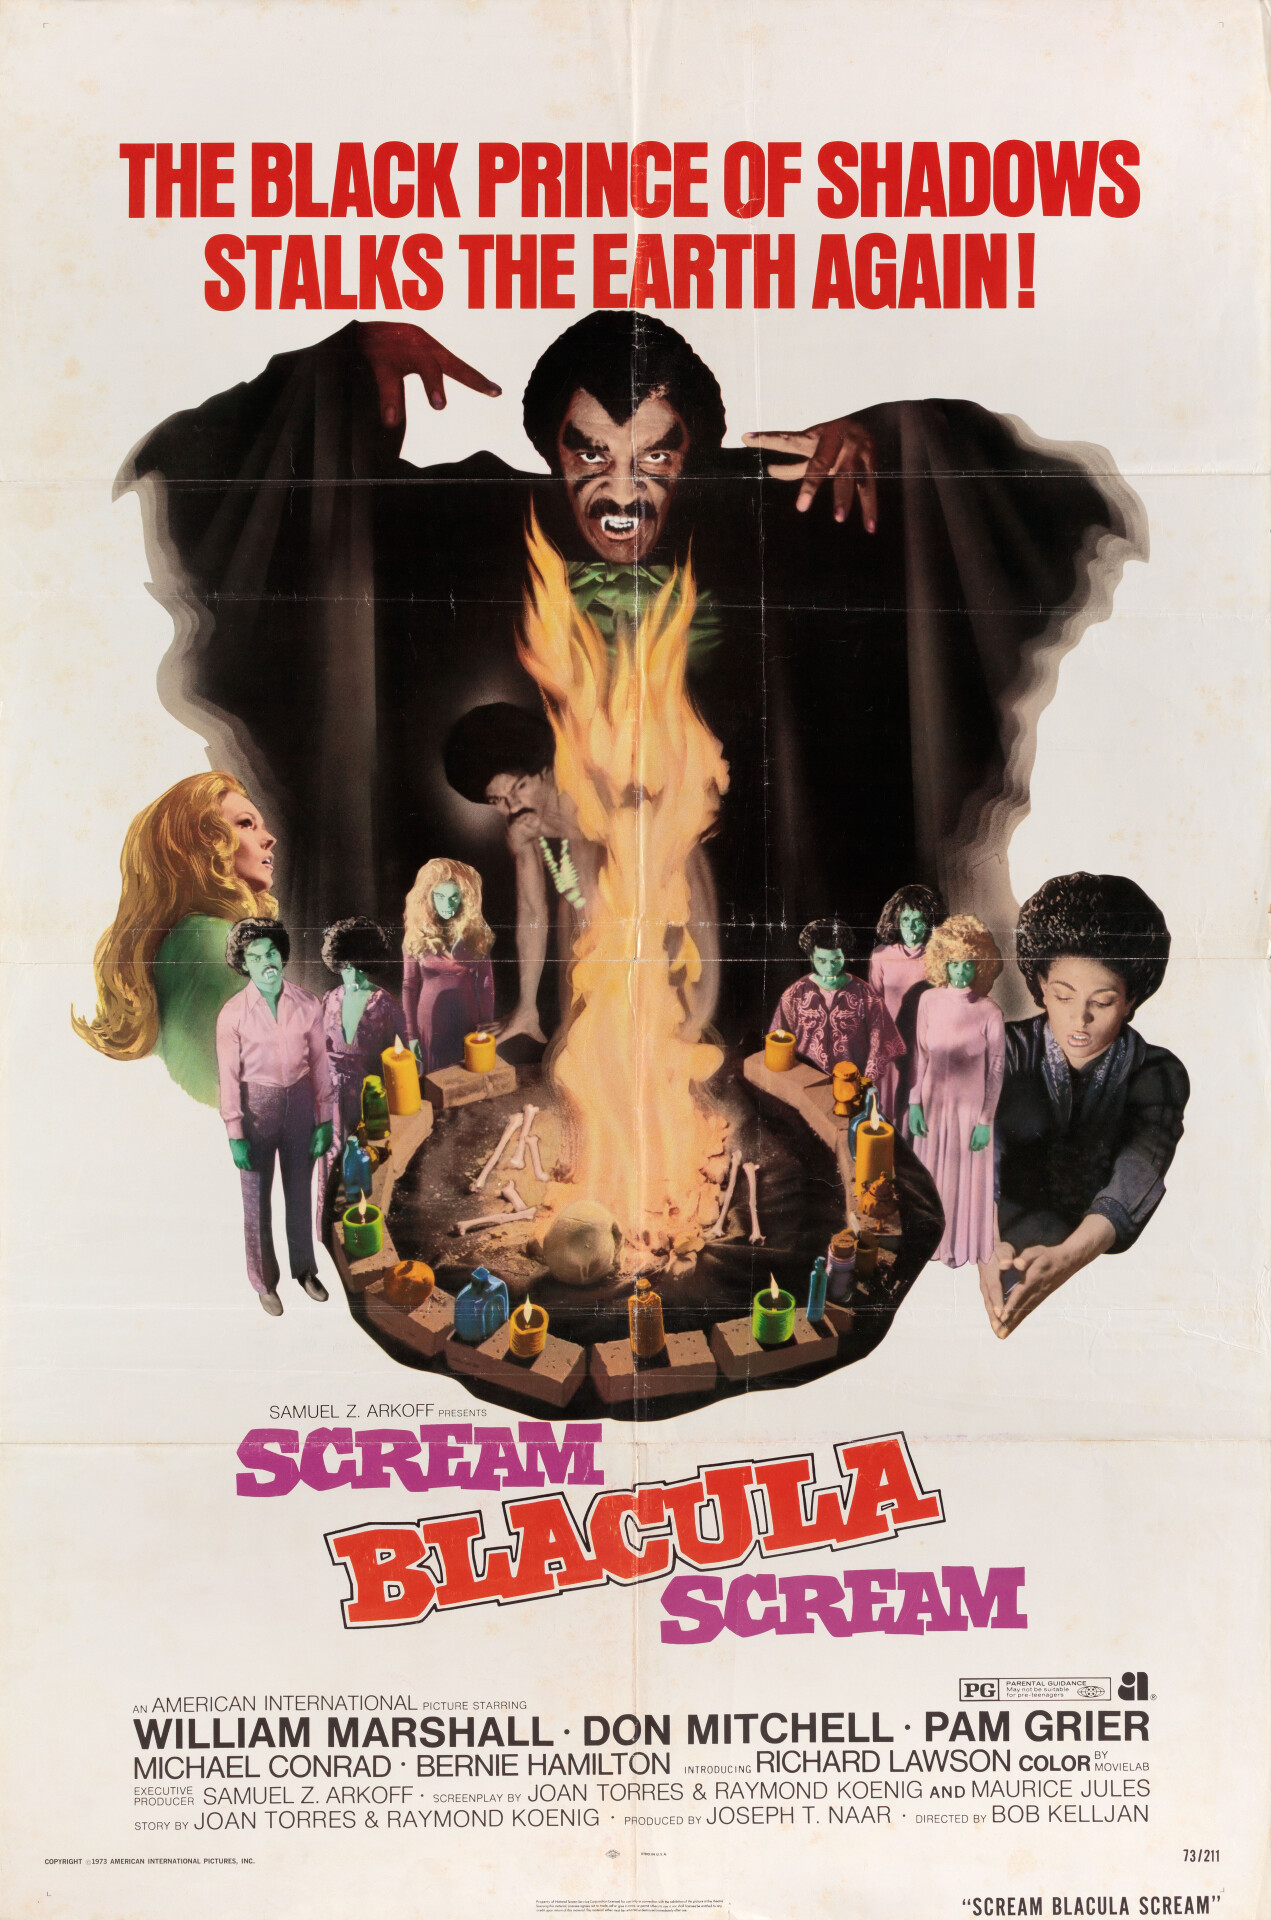 Кричи, Блакула, кричи (Scream Blacula Scream, 1973), режиссёр Боб Келиджан, американский постер к фильму (ужасы, 1973 год)